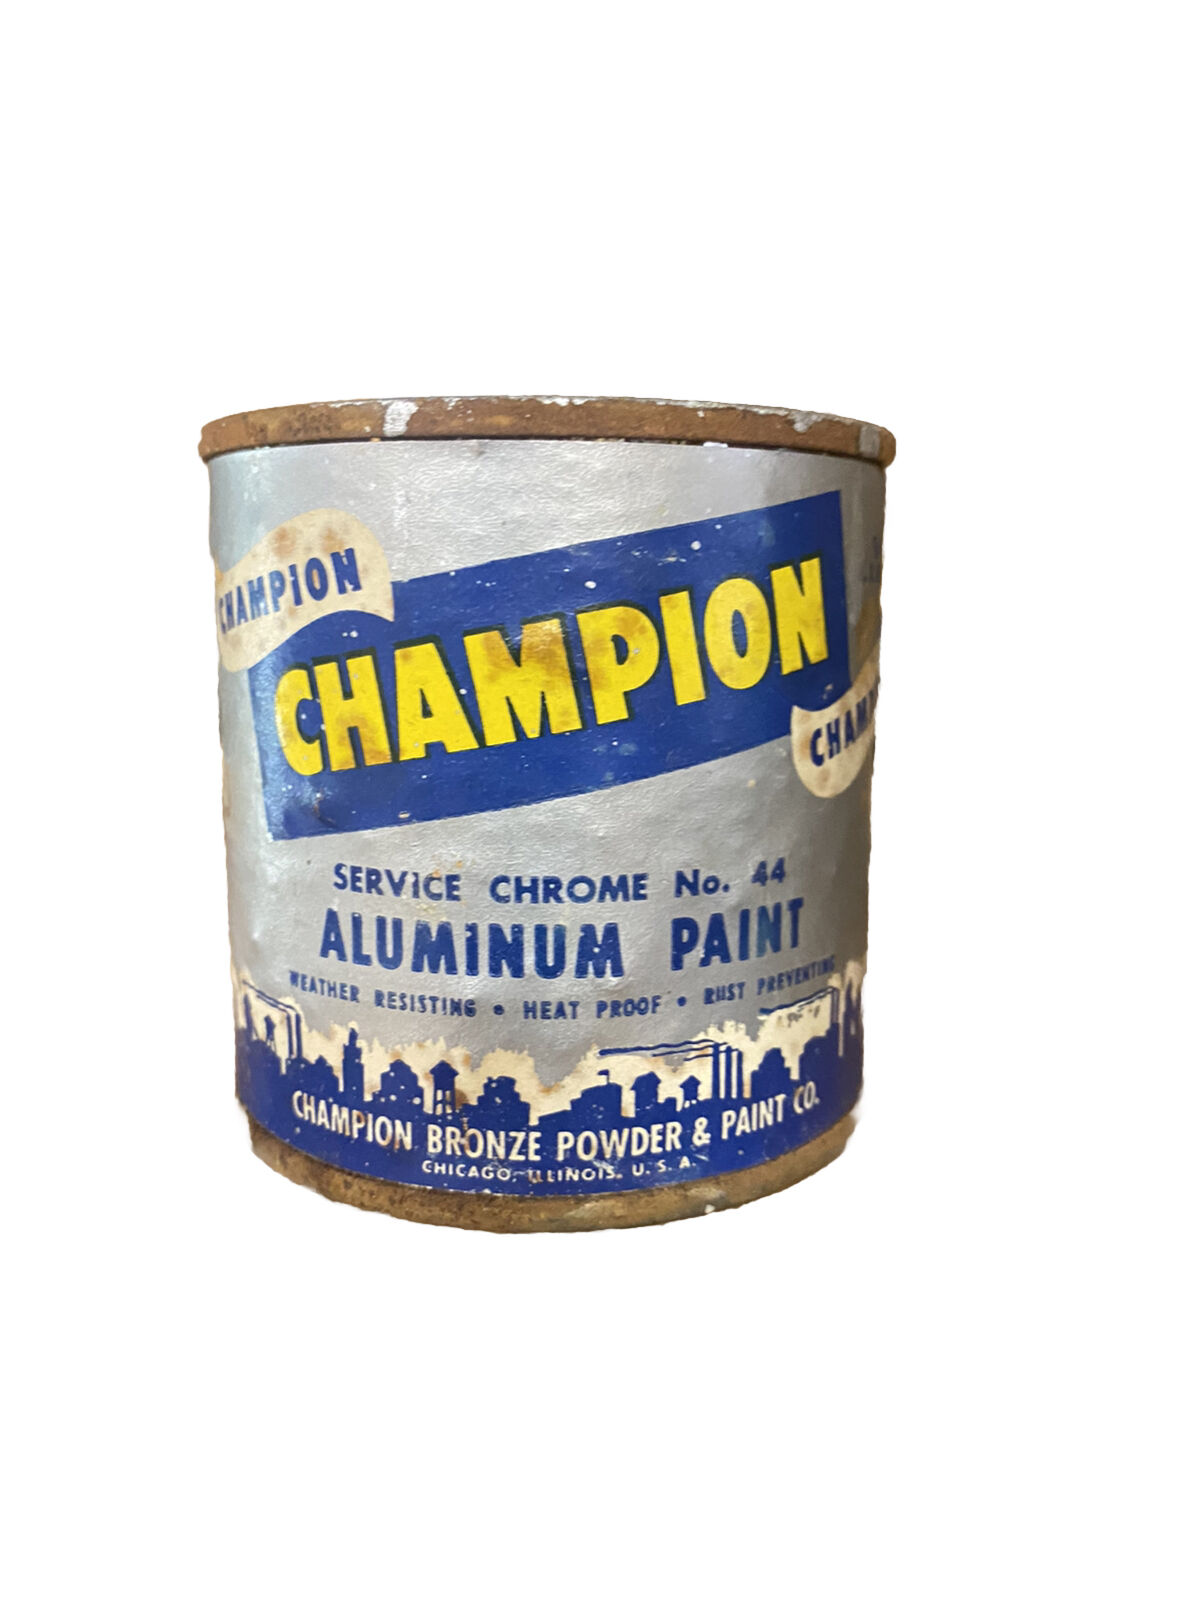 Champion Aluminum Paint Vintage Paint Can